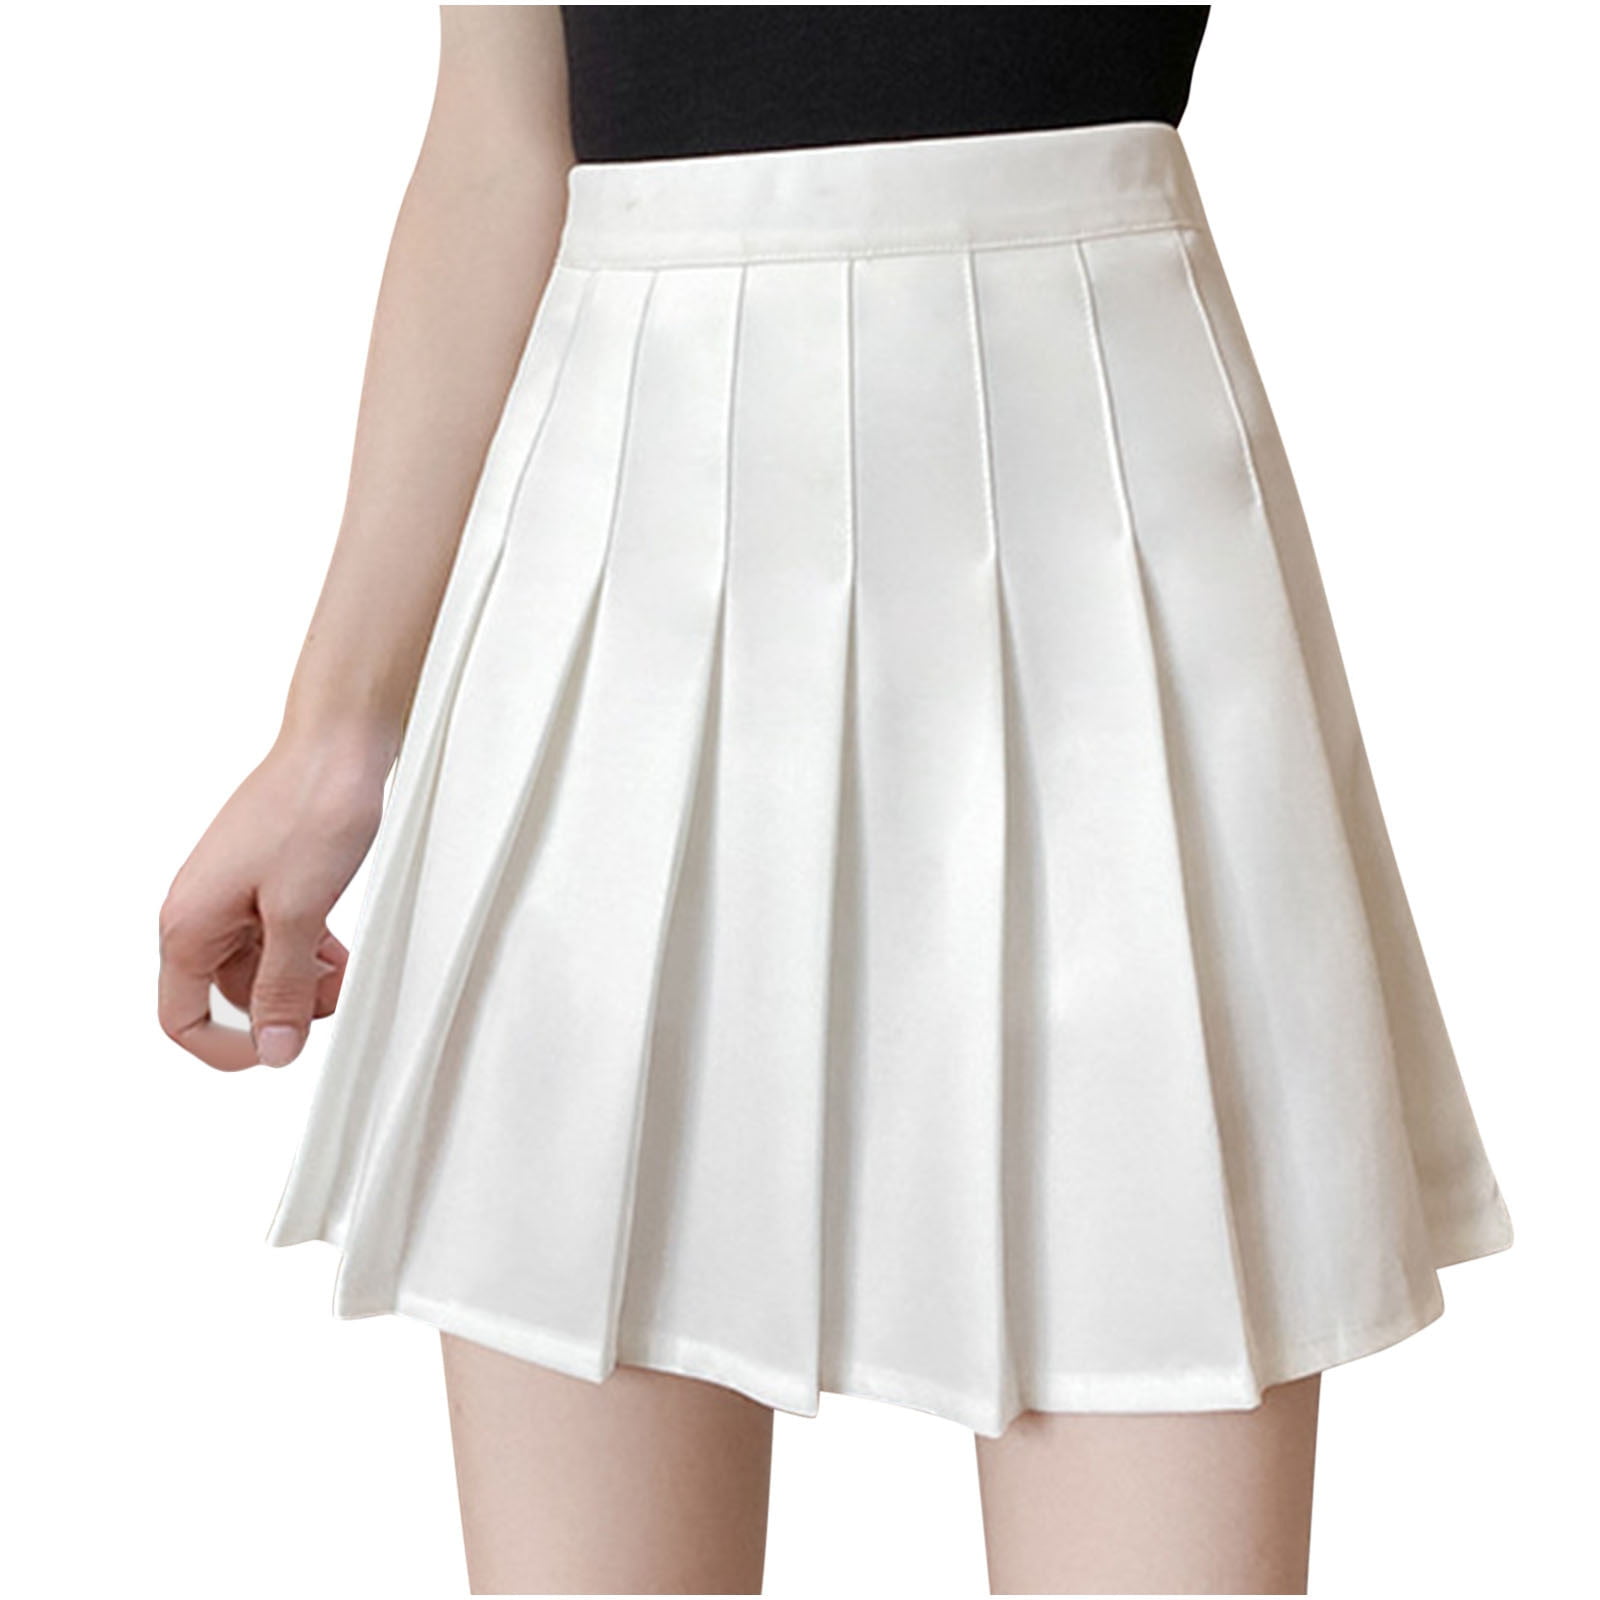 School Uniform Skirt for Women Teen Girls JK Pleated High Waisted ...